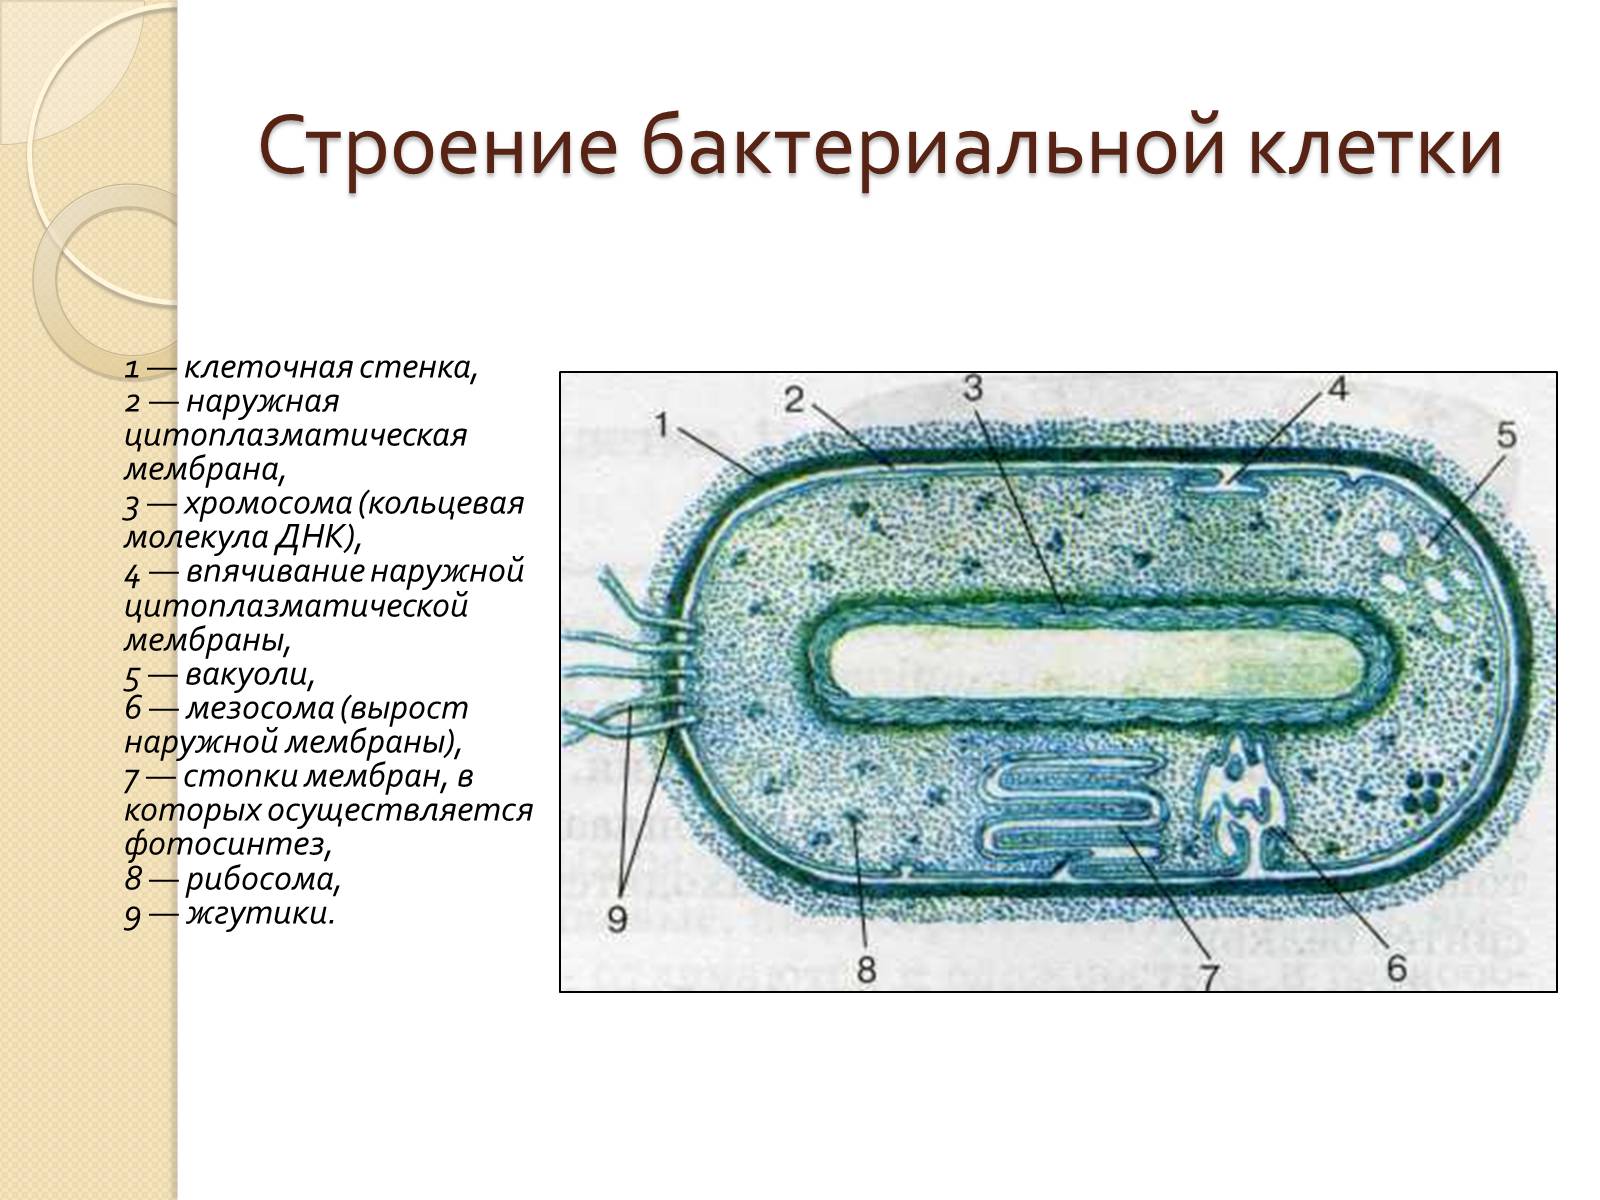 Прокариоты где. Строение прокариотической клетки бактерии. Строение прокариотической бактериальной клетки. Структура строения прокариотической клетки. Строение бактериальной клетки прокариот.